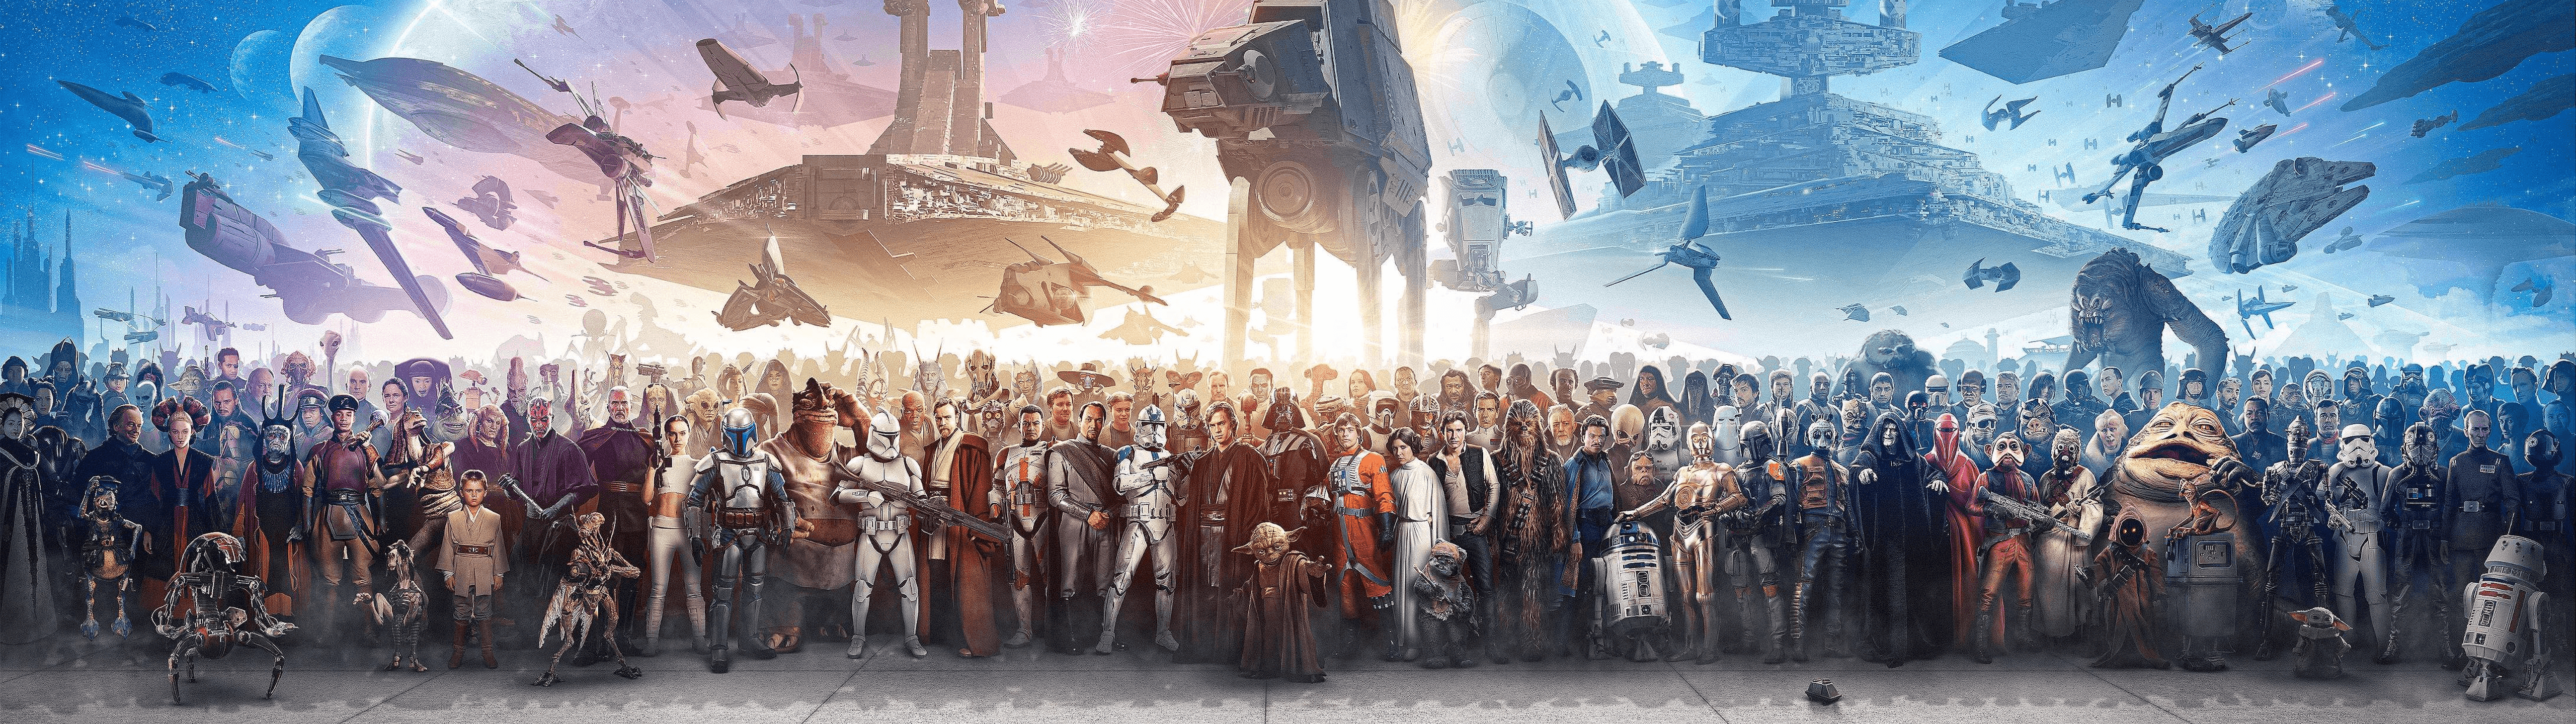 Star Wars Wallpapers mang đến những cảnh quan rực rỡ và bí ẩn của vũ trụ sao trong bức ảnh liên quan đến từ khóa này. Bạn sẽ được trải nghiệm những chiến tranh trên không gian và đánh bại kẻ thù của bạn trong một không khí hưng phấn và đầy thần kỳ.